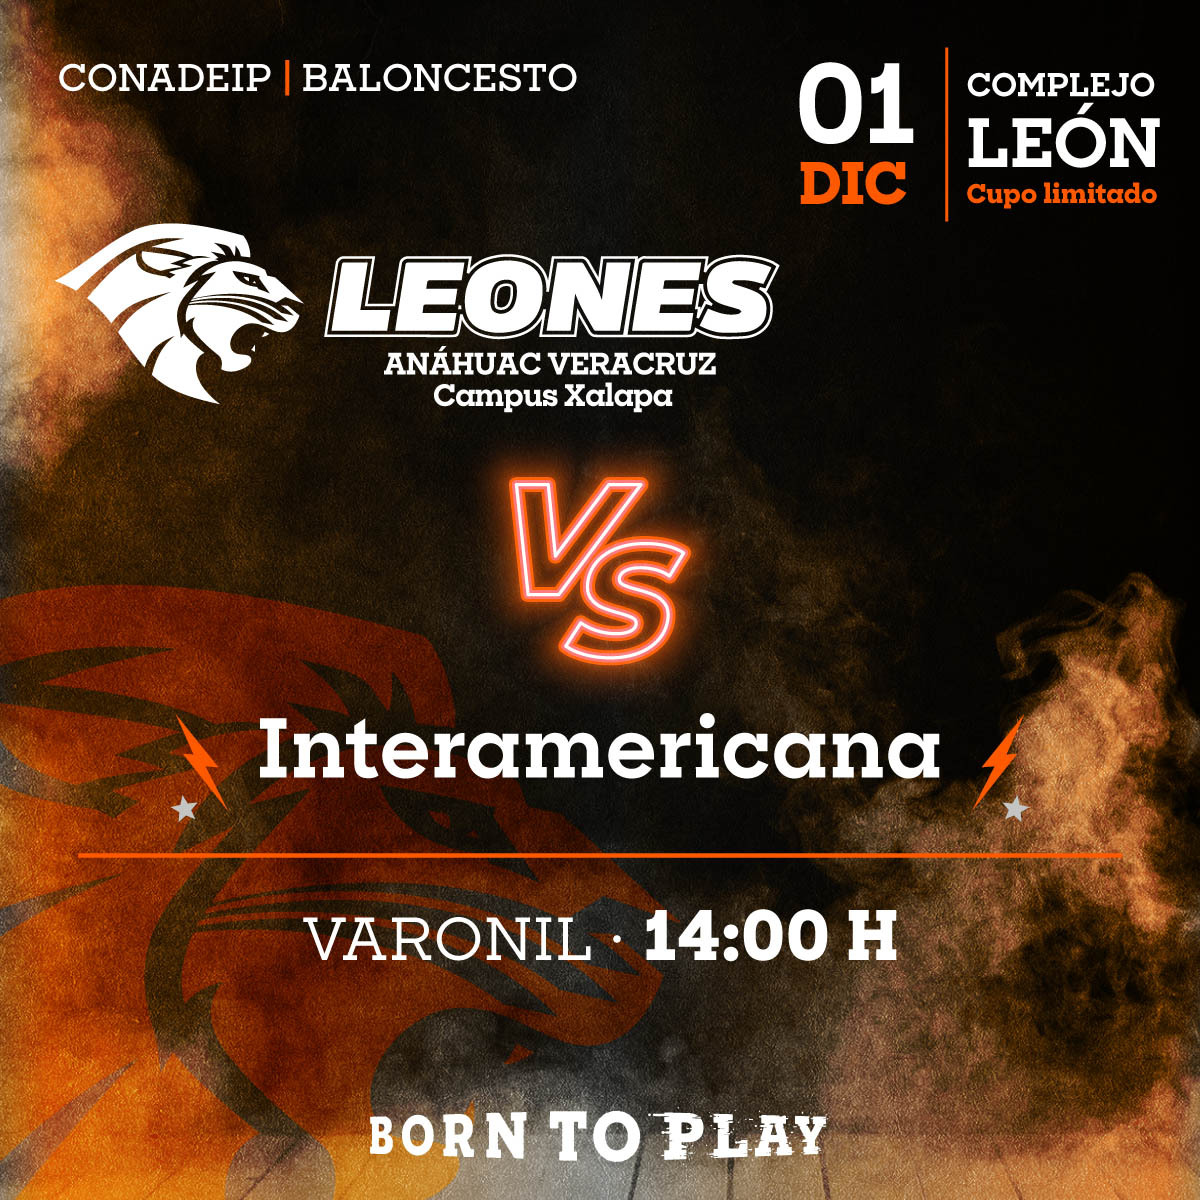 Baloncesto Varonil: Leones vs Interamericana